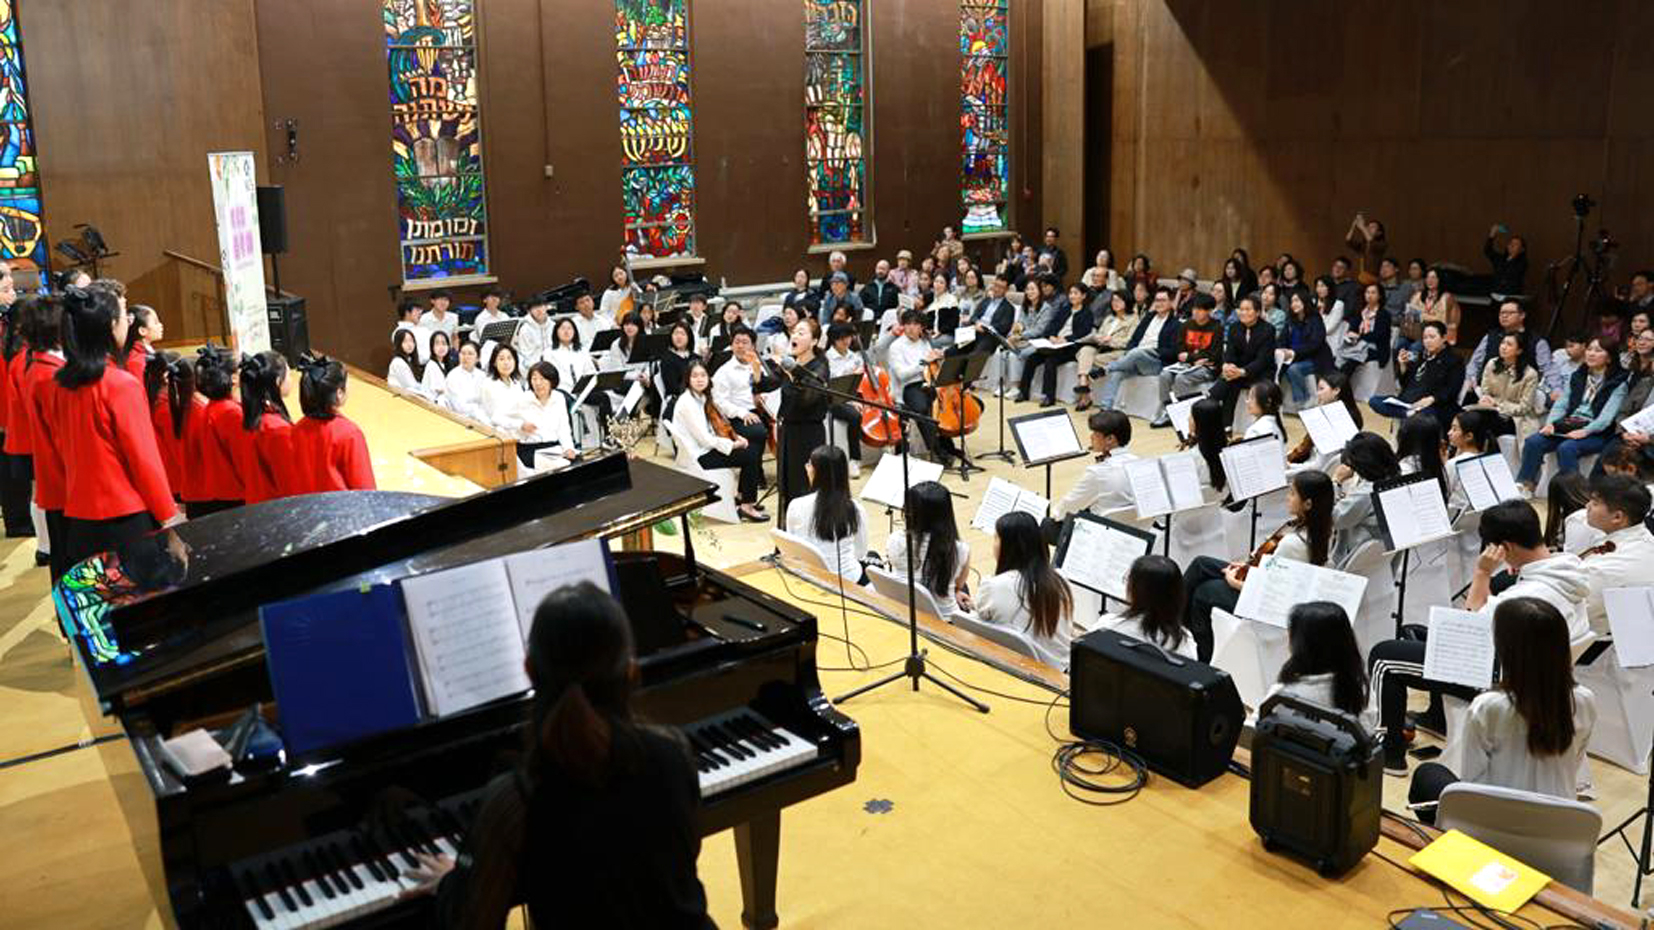 뉴욕한인봉사센타는 16일 나눔하모니 오케스트라와 롱아일랜드한국학교 합창단, 한국인 유명 오페라 가수들이 참여하는 신춘음악회를 개최해 관객들에게 감동을 선사했다. [사진 뉴욕한인봉사센터]